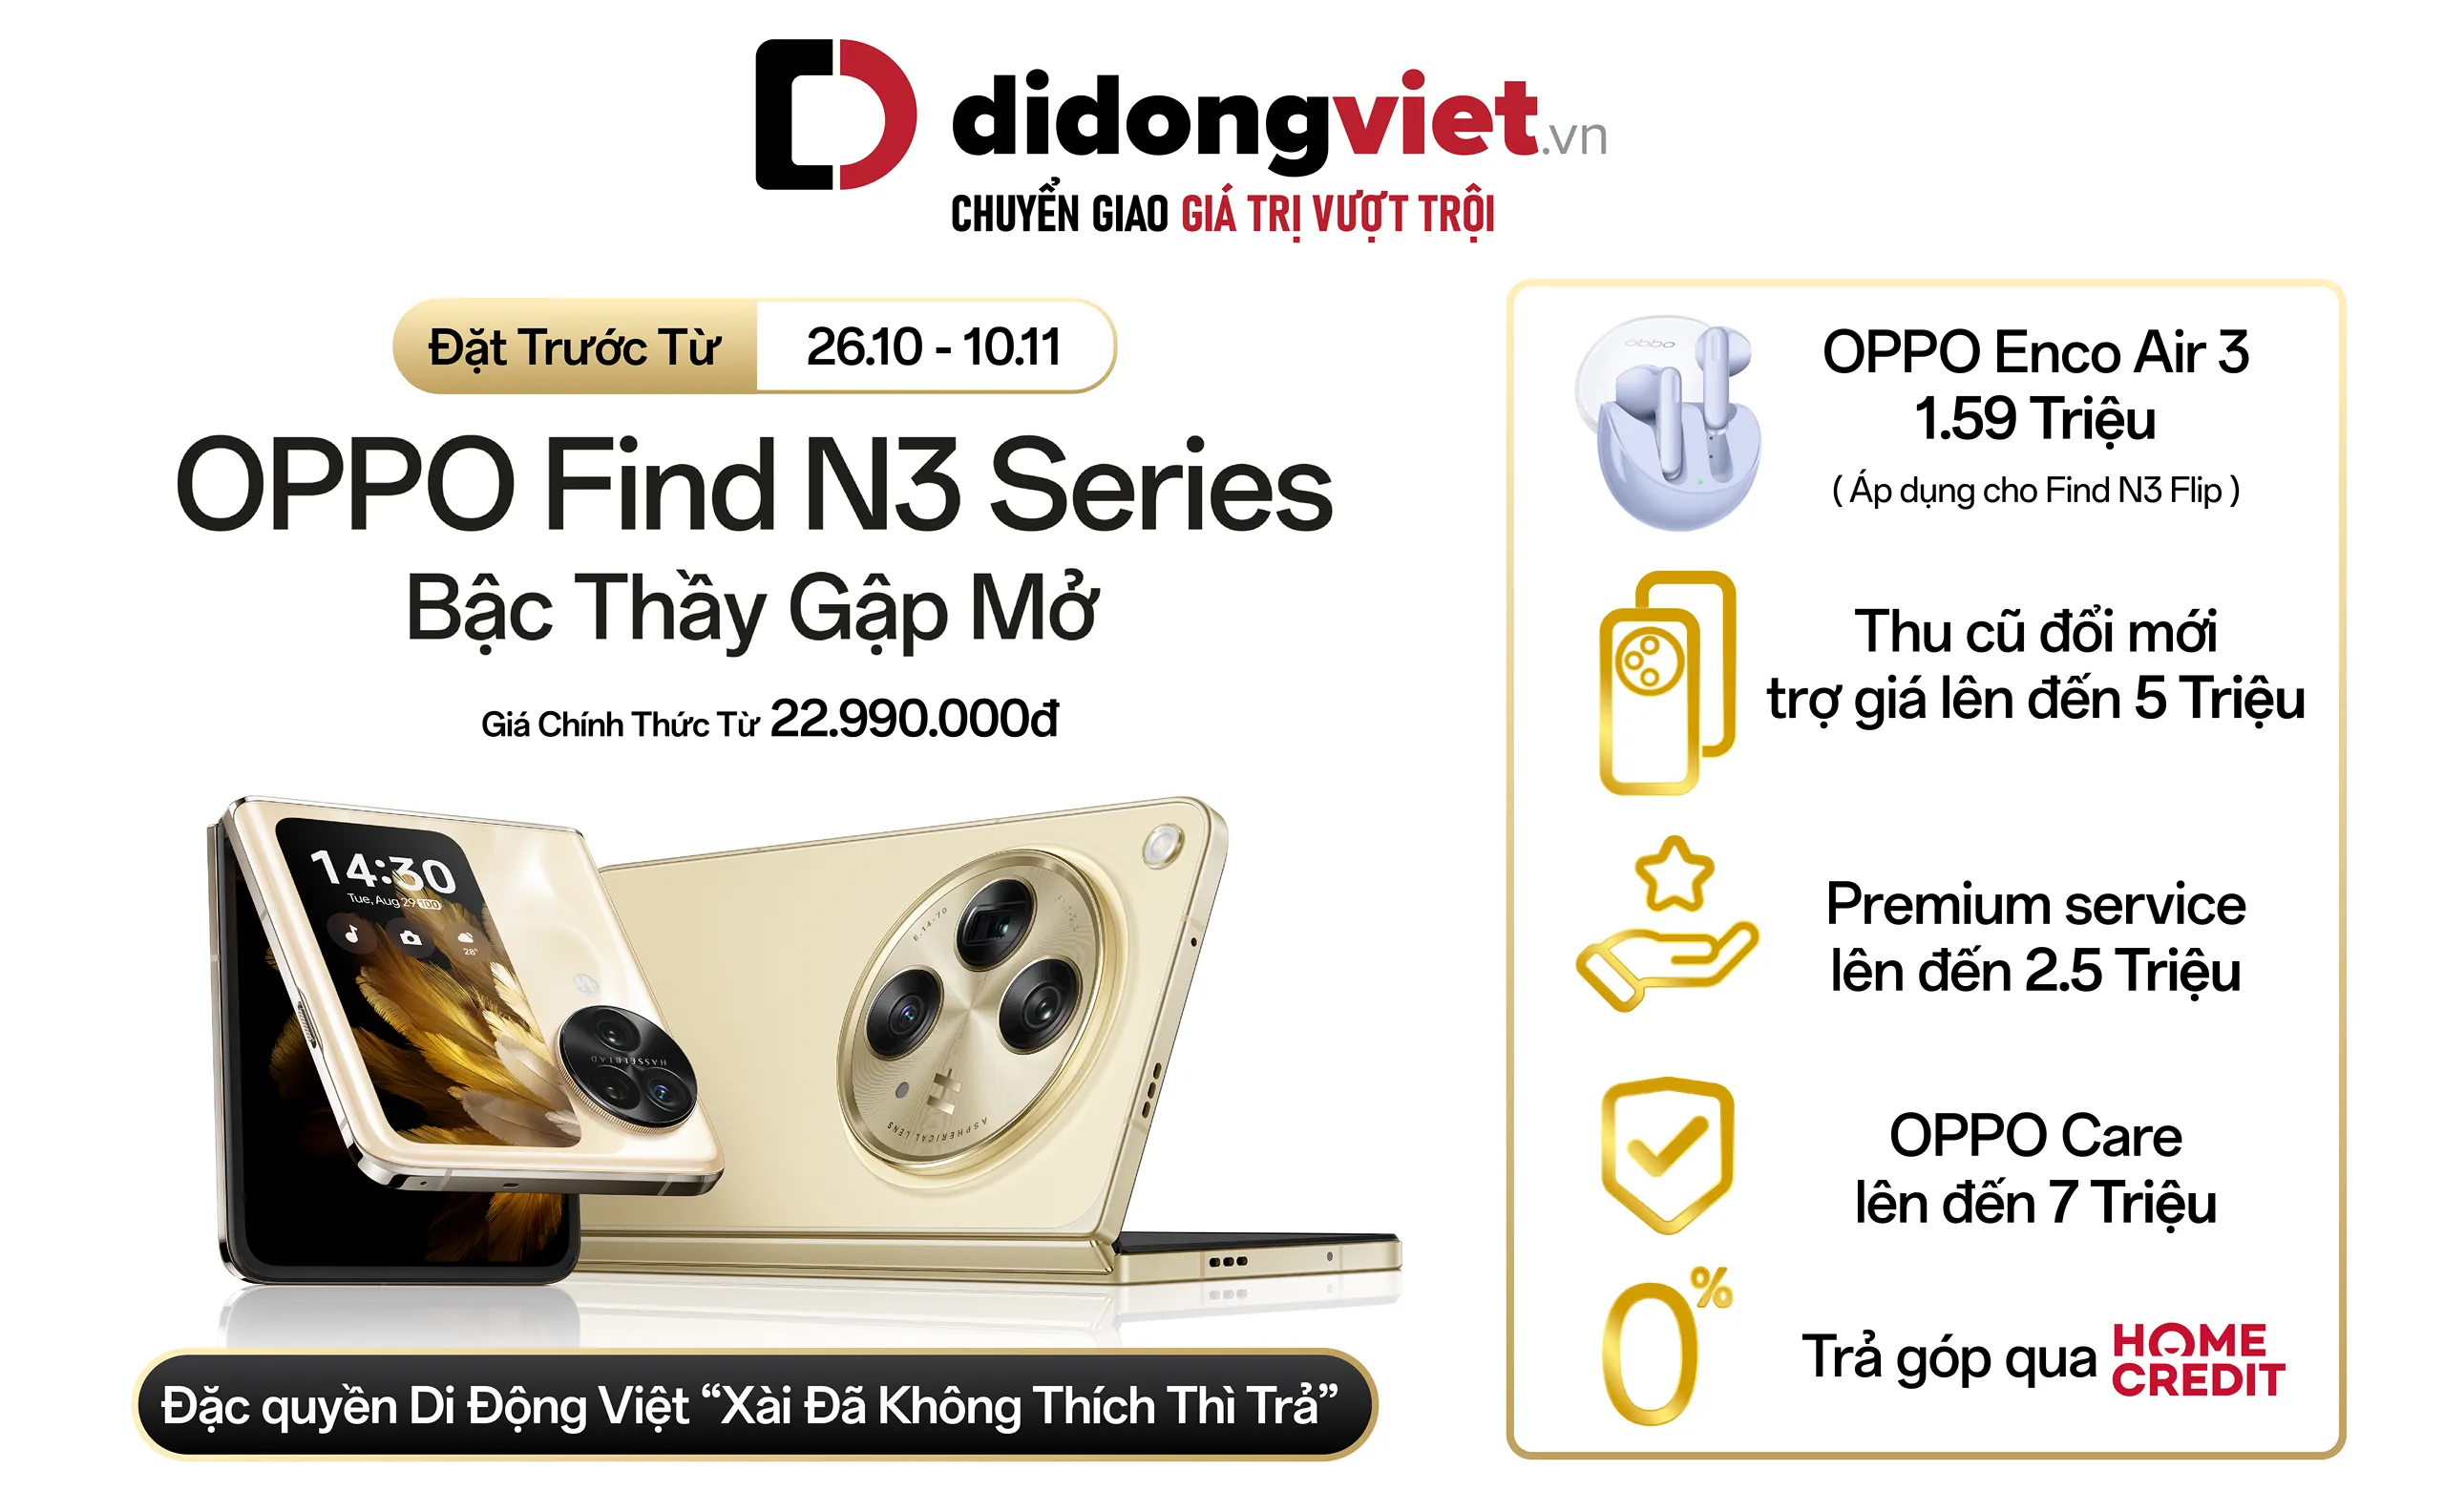 Di Động Việt nhận đặt trước OPPO Find N3 series ưu đãi lên đến 14.5 triệu đồng